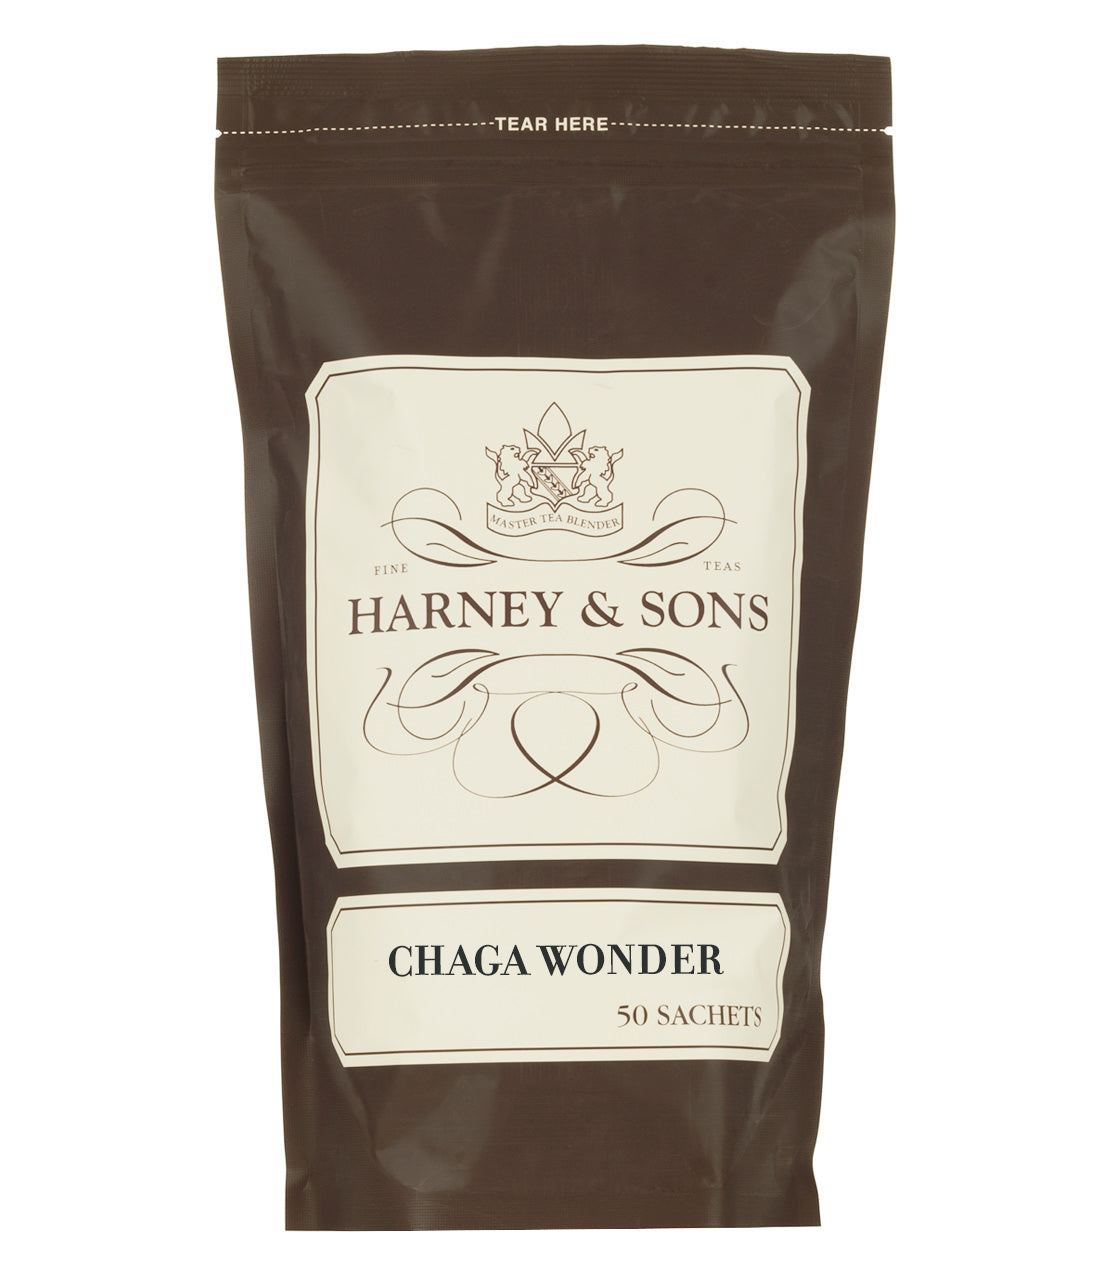 Chaga Wonder, Bag of 50 Sachets - Sachets Bag of 50 Sachets - Harney & Sons Fine Teas